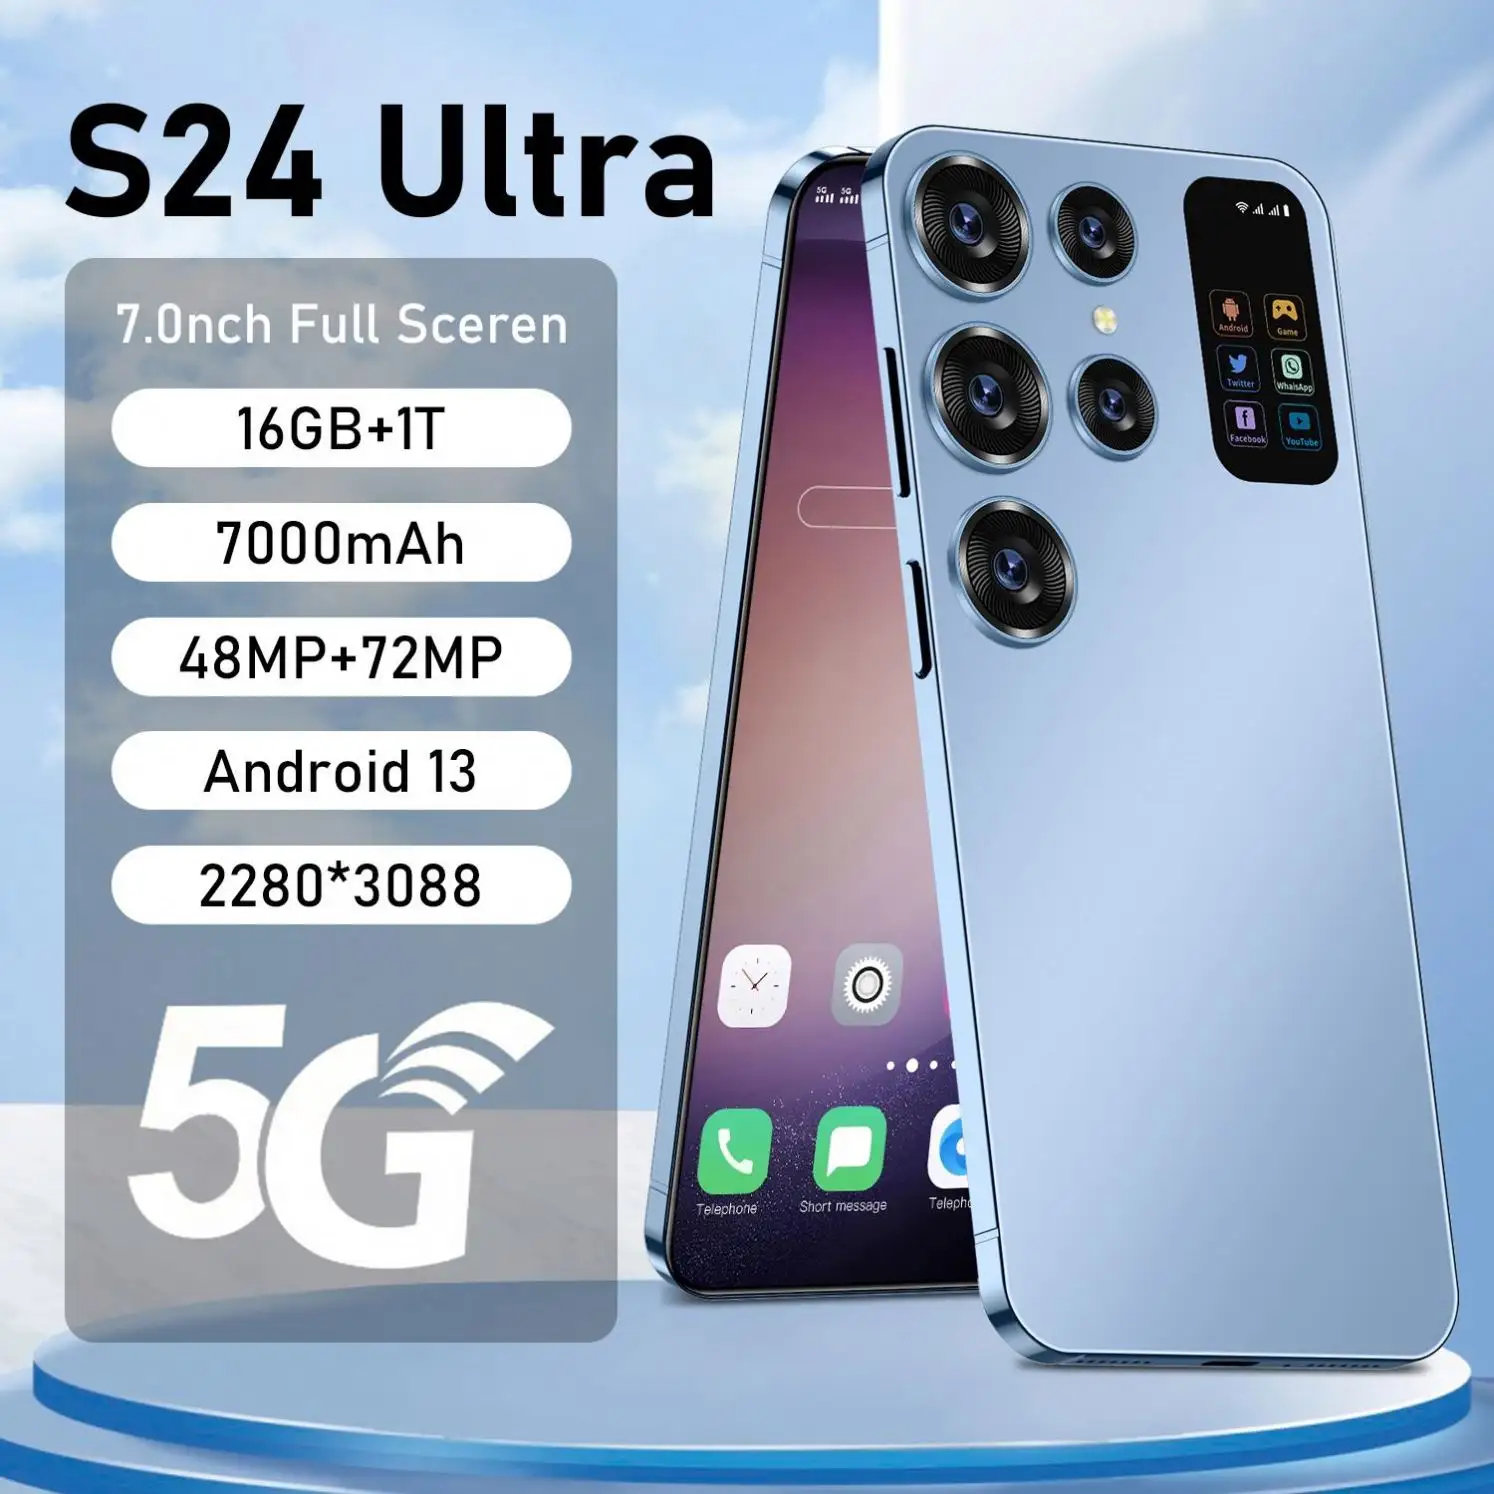 Toptan fabrika S24 U Itra büyük pil çift SIM cep telefonu ile 7.2 inç gerçek 4G LTE ağ abd CDMA cep telefonları